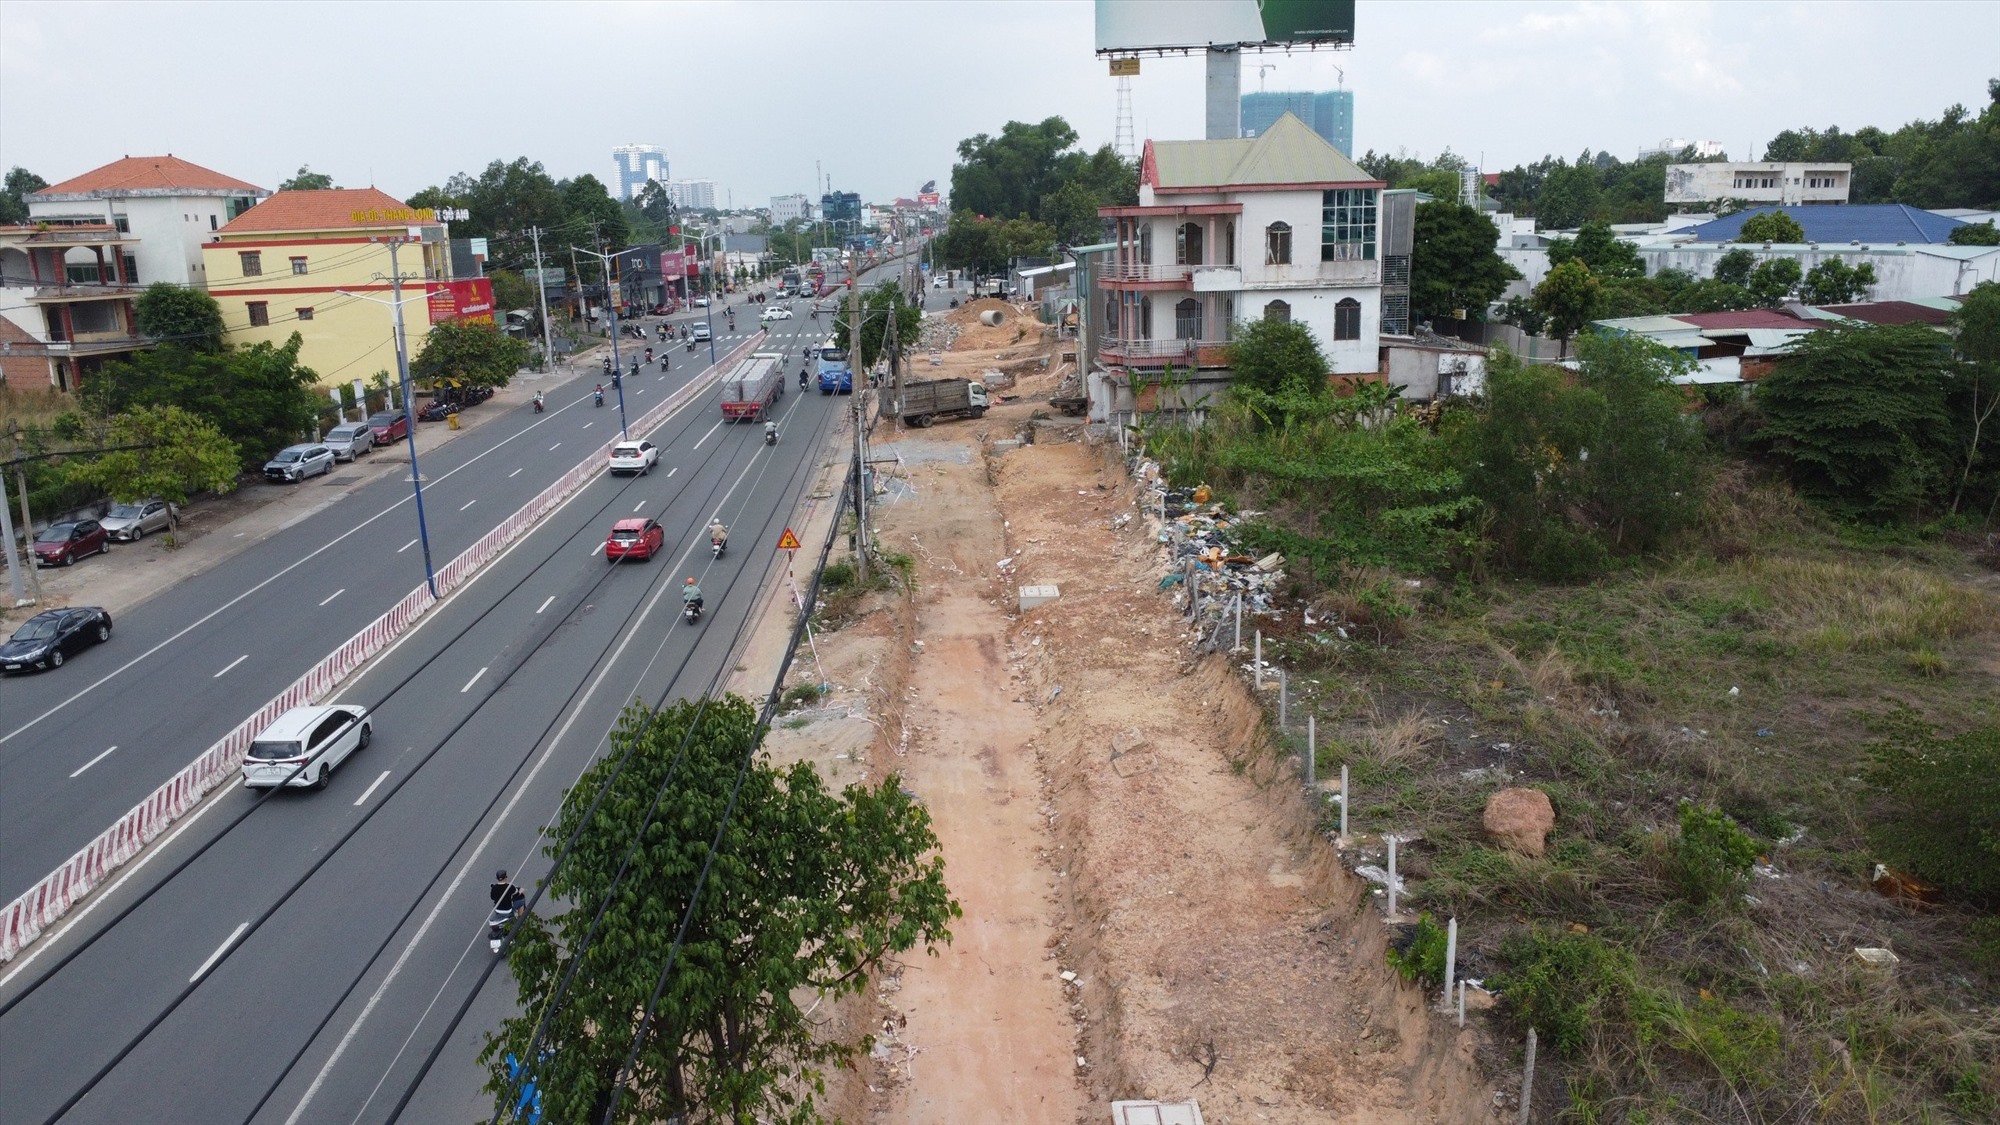 Hiện dự án triển khai trước đoạn từ nút giao đại lộ Tự Do (Khu công nghiệp VSIP 1, TP Thuận An) đến ngã tư Lê Hồng Phong, dài khoảng 6 km. Phần mở rộng ở bên phải đường, theo hướng từ TPHCM đi Bình Dương. 